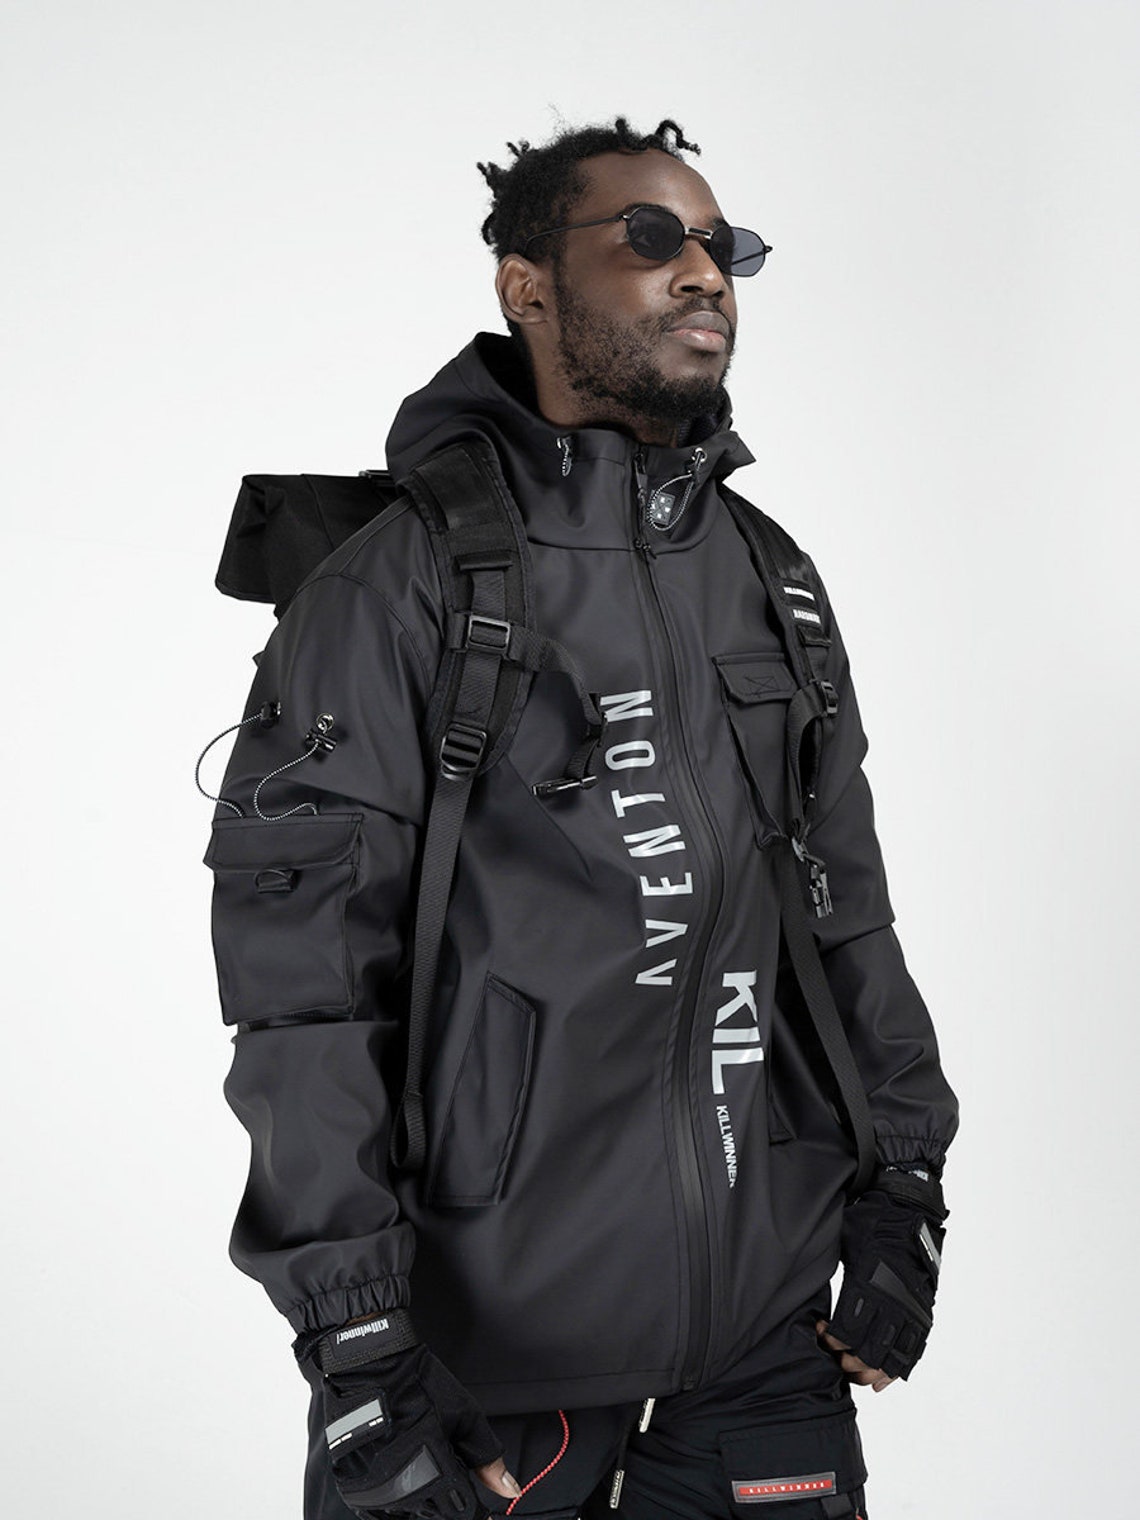 MFCT Streetwear Black Techwear Windbreaker Faux Leather Jacket | Etsy